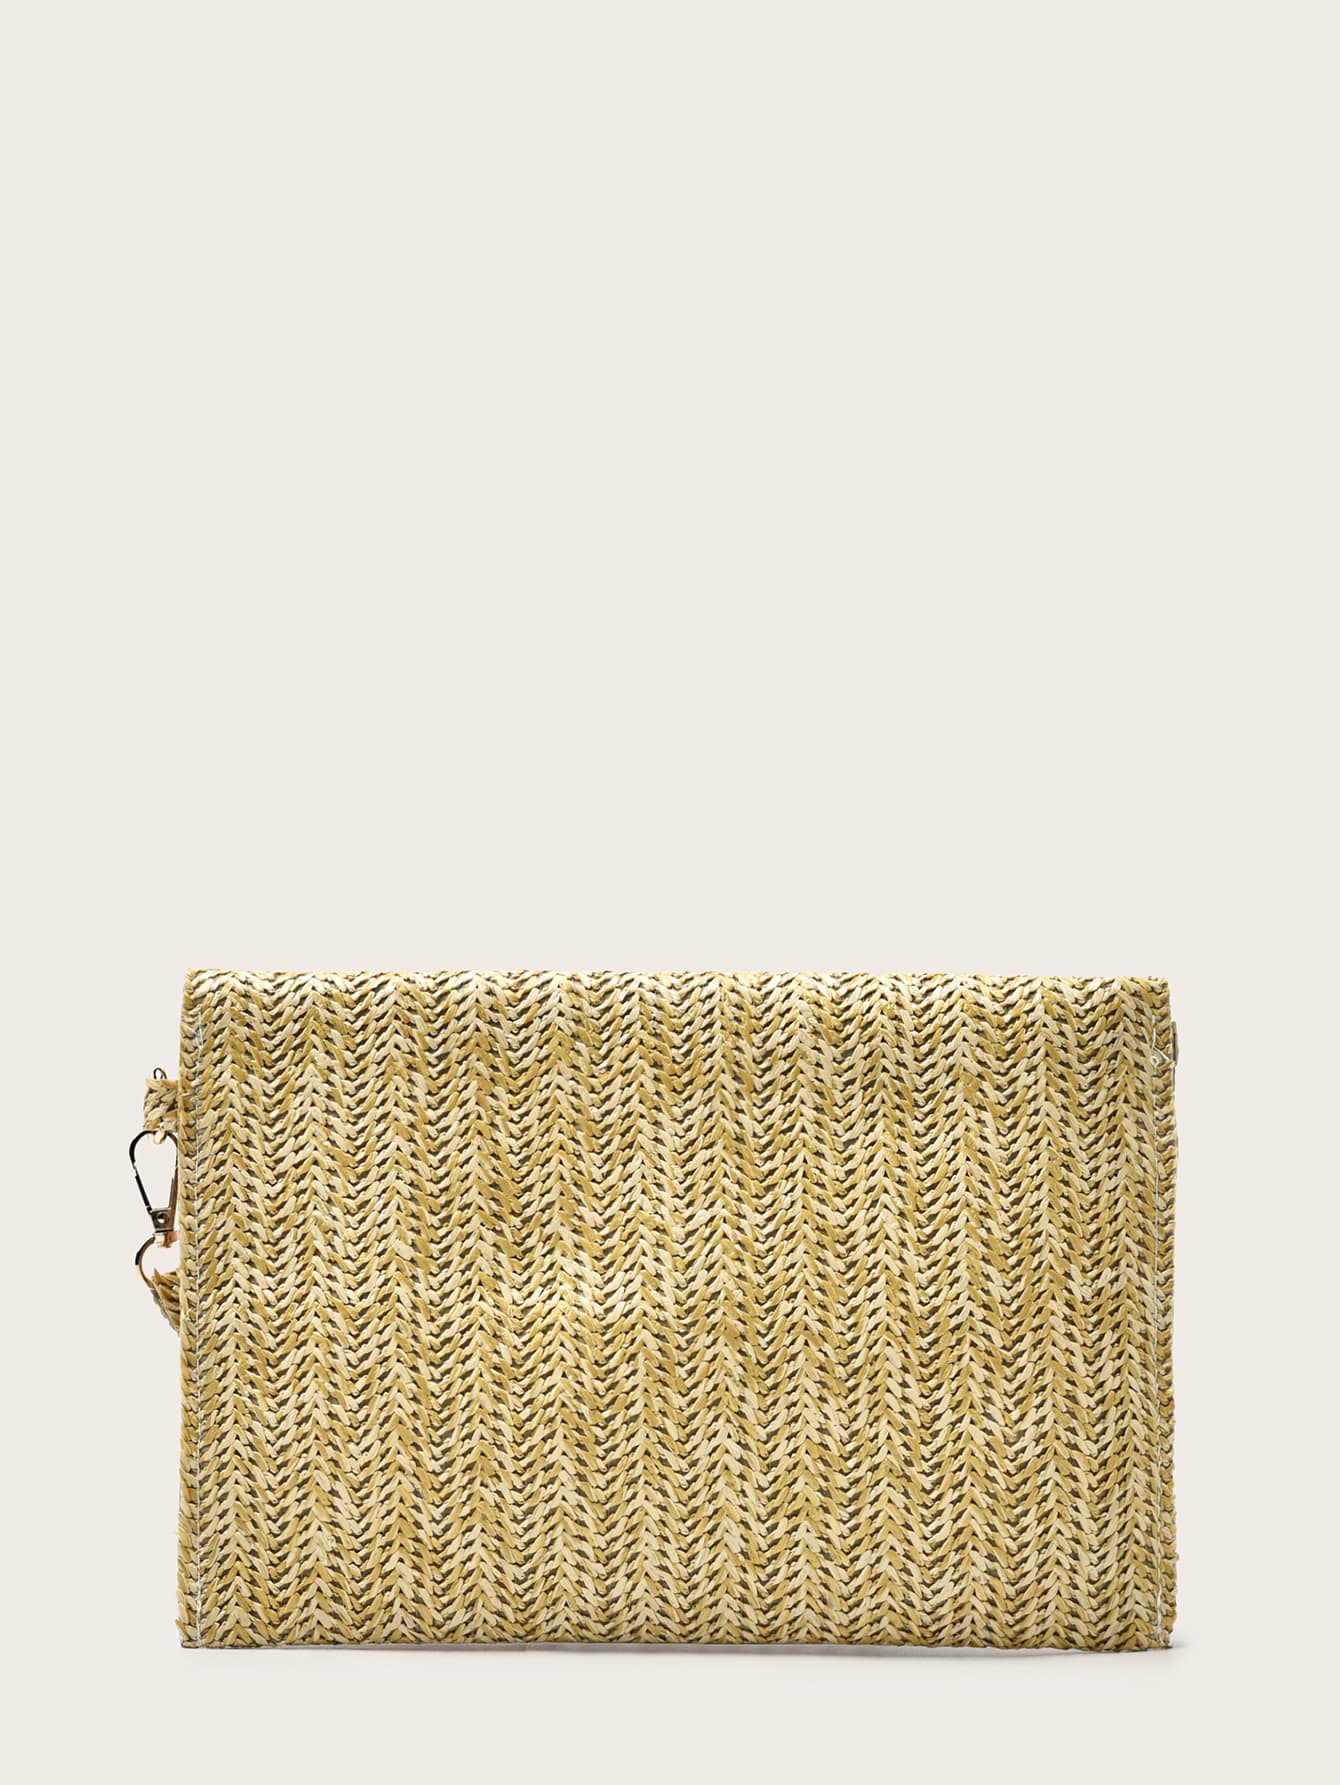 Minimalist Straw Bag With Wristlet